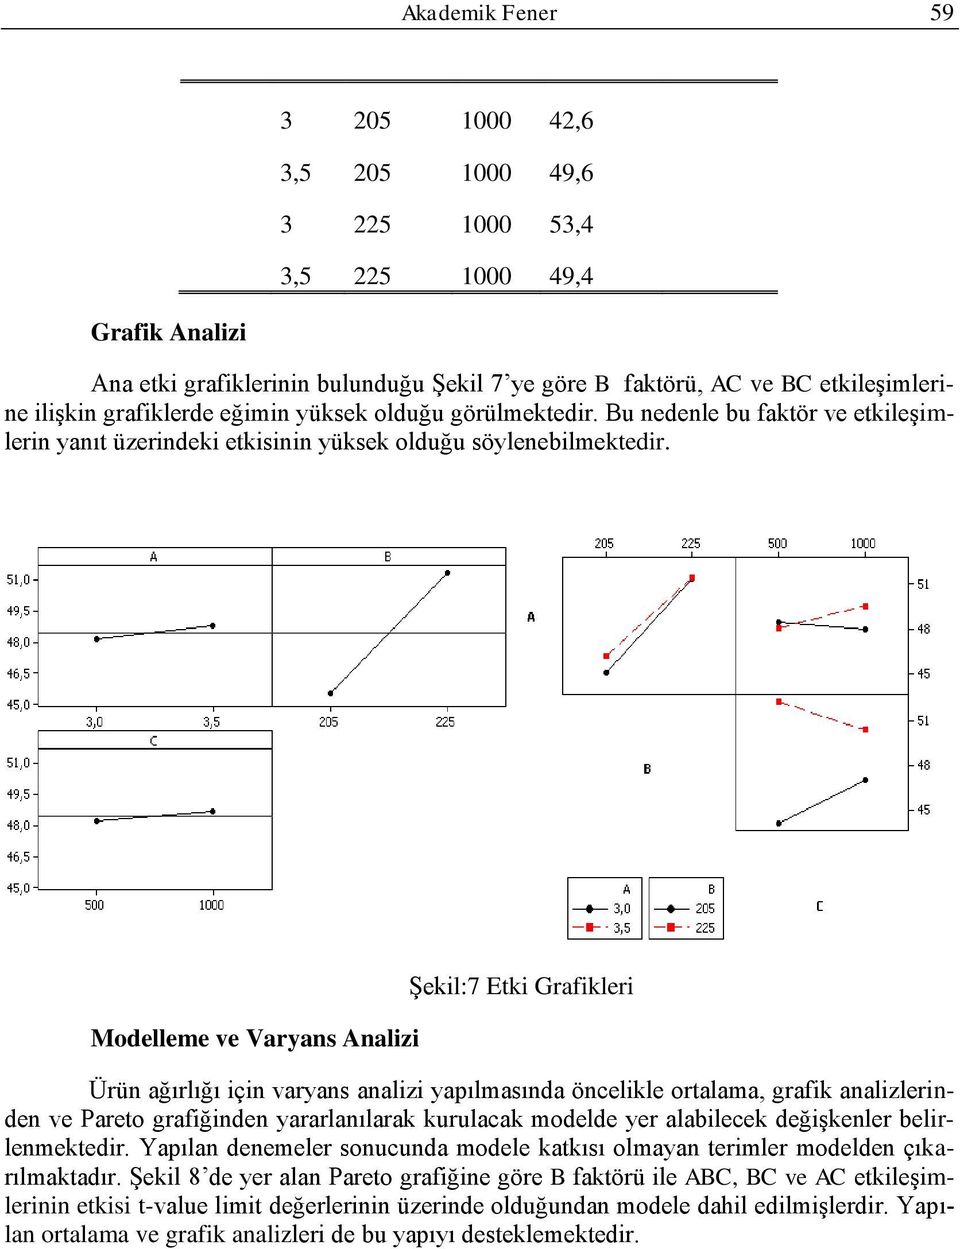 Modelleme ve Varyans Analizi ġekil:7 Etki Grafikleri Ürün ağırlığı için varyans analizi yapılmasında öncelikle ortalama, grafik analizlerinden ve Pareto grafiğinden yararlanılarak kurulacak modelde